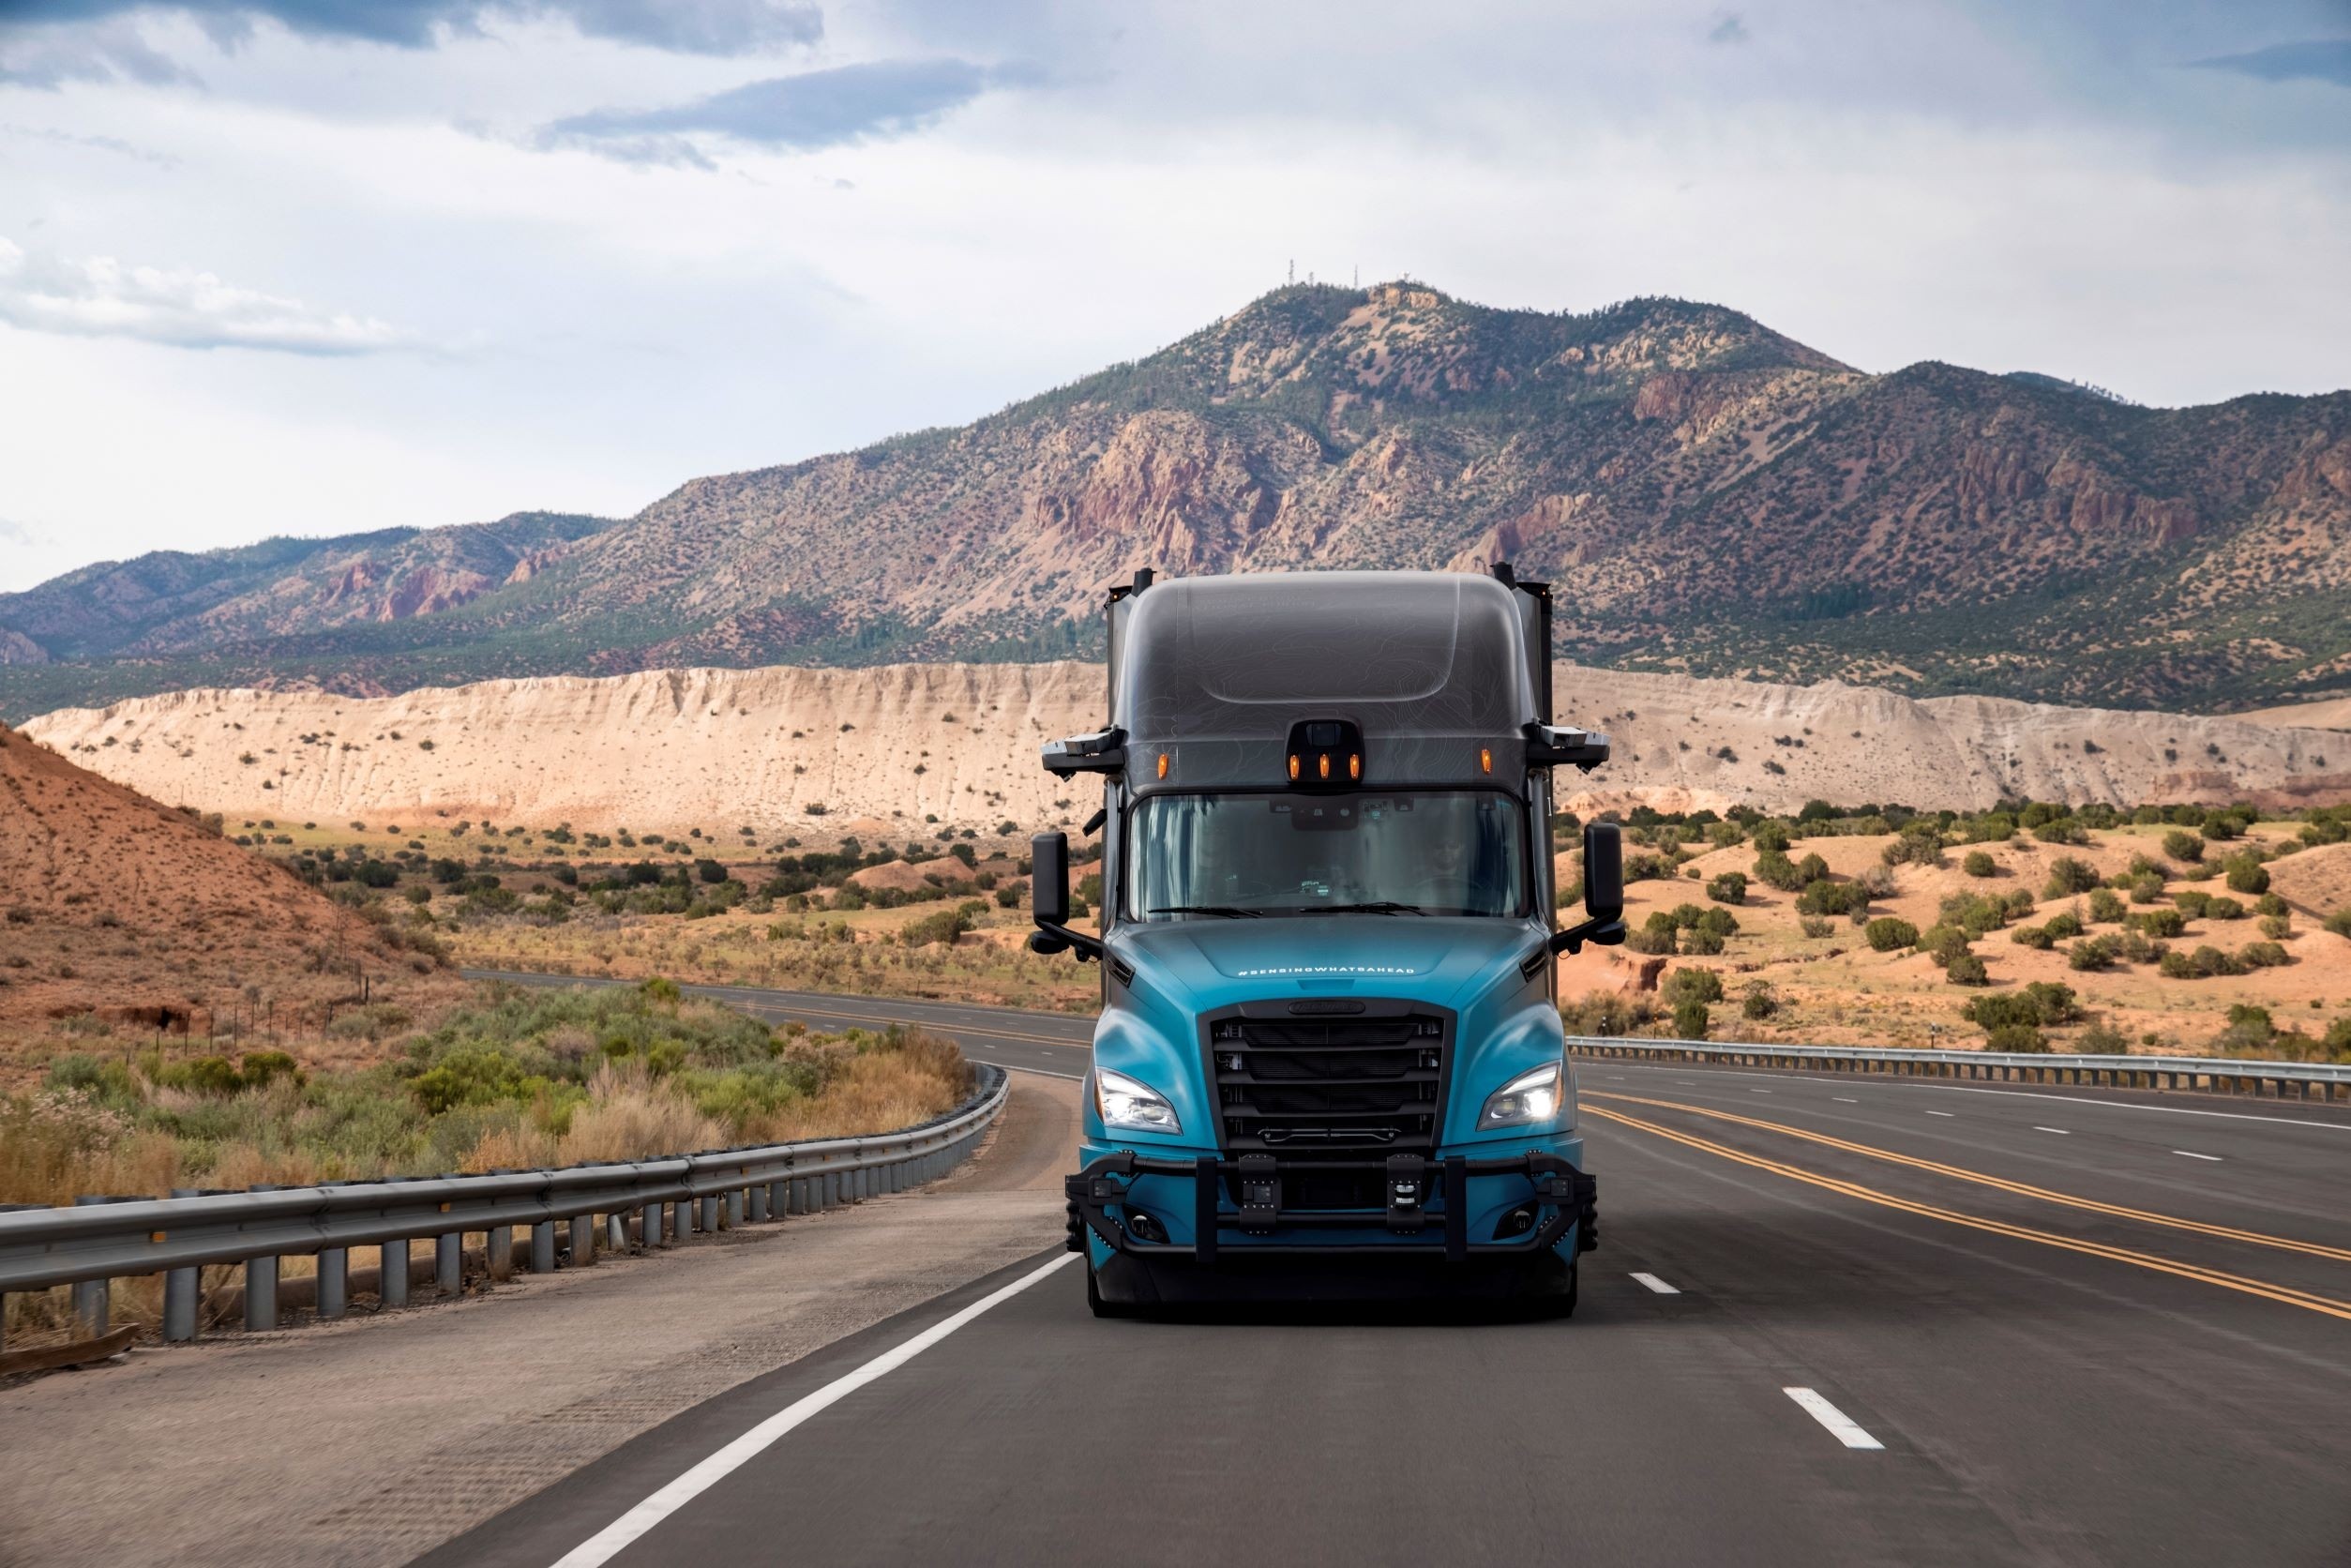 Otonom kamyon taşımacılığı sistemlerini geliştirme çalışmaları tüm hızıyla devam ediyor